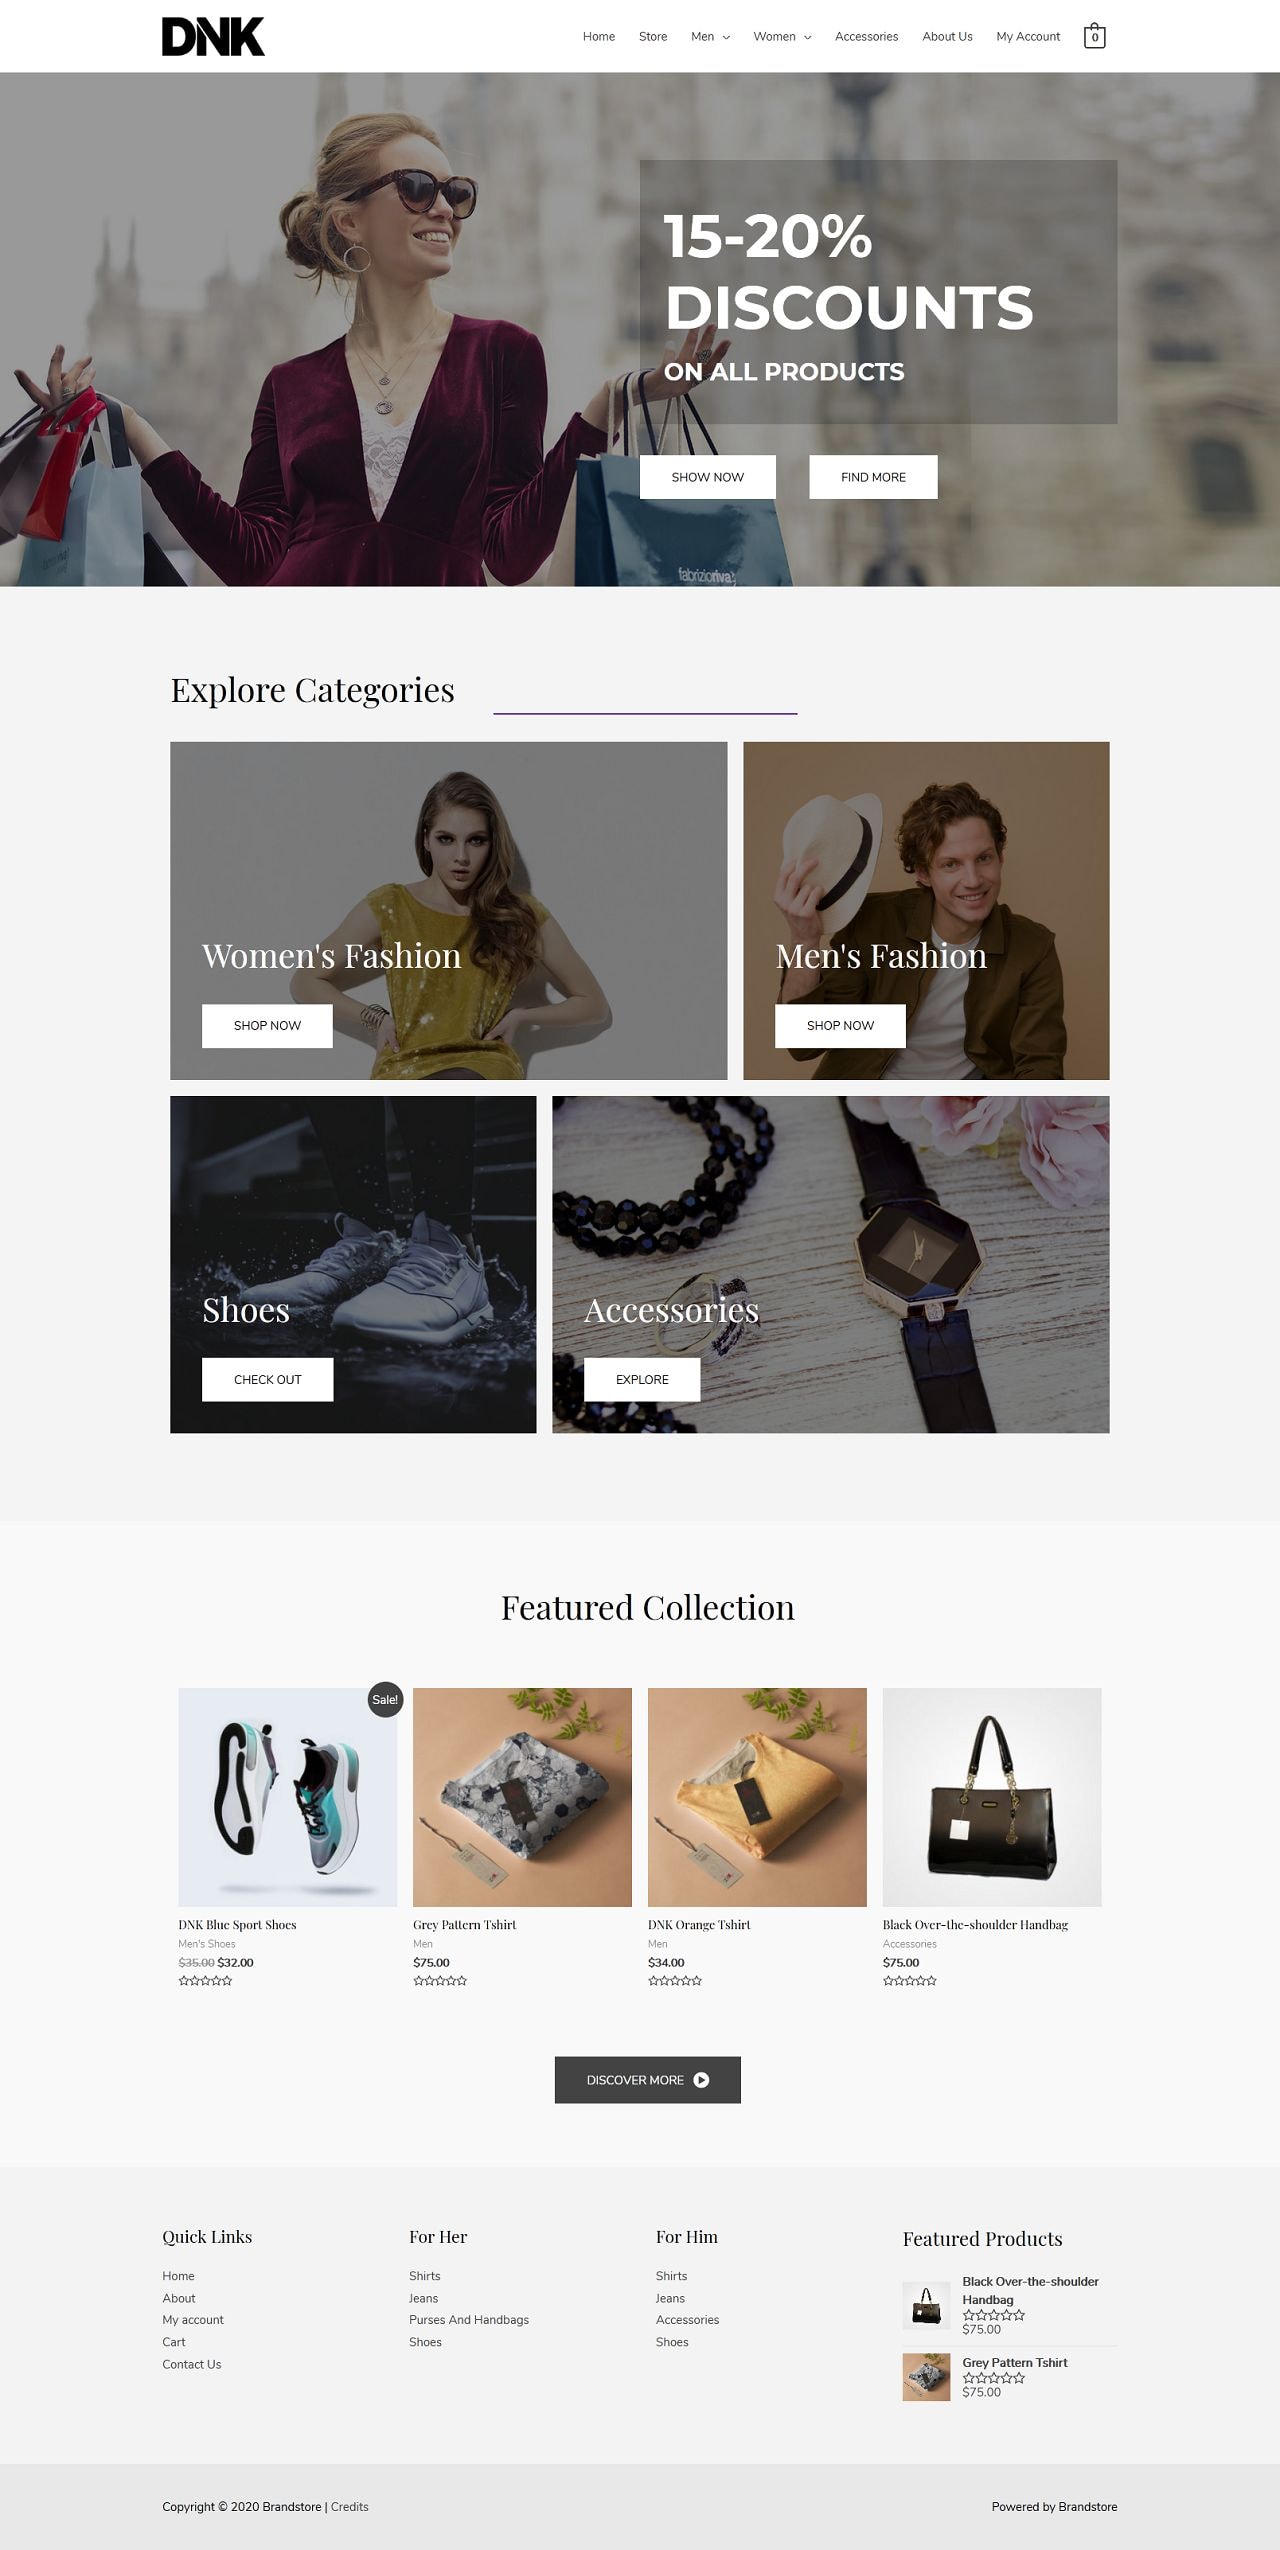 Fagowi.com Website Design Templates For eCom Brand S Online Shop - Home Page Image